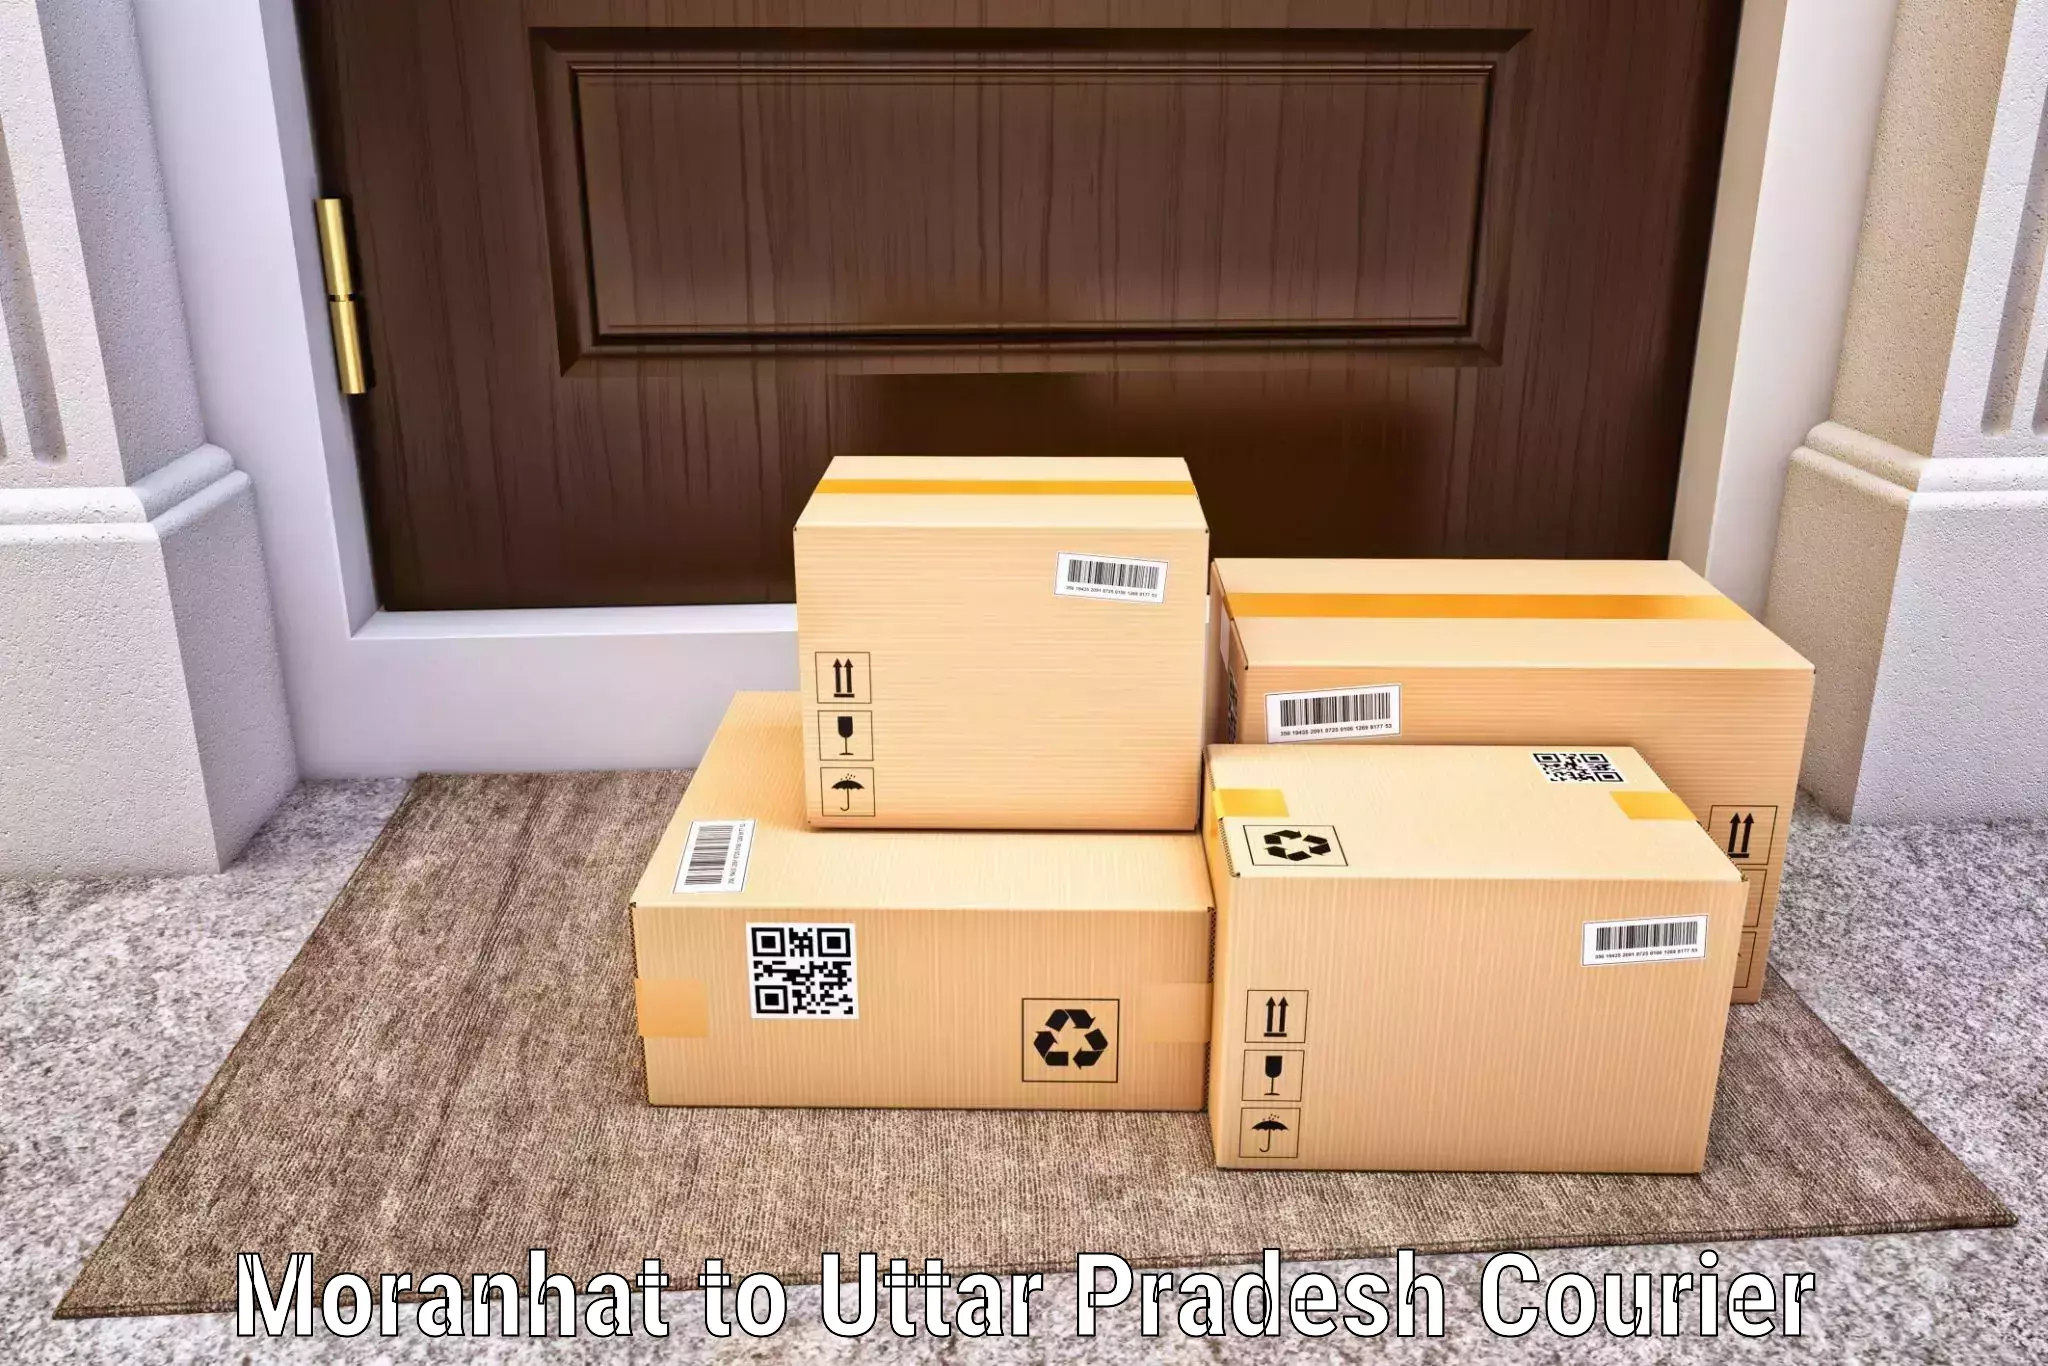 E-commerce logistics support Moranhat to Machhali Shahar